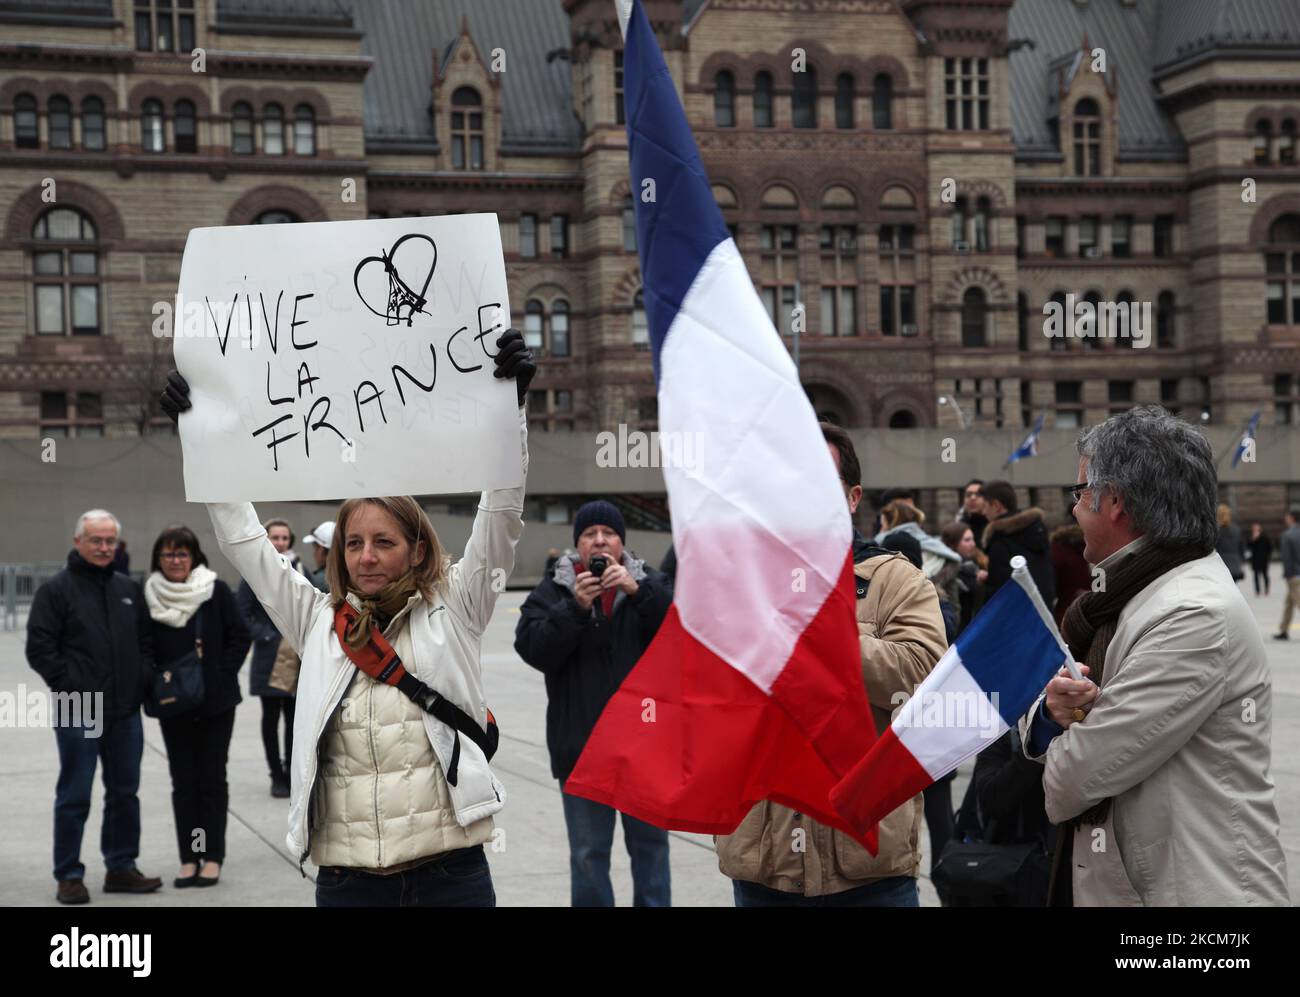 14. November 2015, Toronto, Ontario, Kanada --- Hunderte nehmen an einer Mahnwache auf dem Nathan Phillips Square in Toronto, Kanada, Teil, um einen Tag nach den Terroranschlägen in Paris Solidarität mit den Bürgern Frankreichs zu zeigen. Dschihadisten des Islamischen Staats behaupteten am 13. November in Paris eine Reihe koordinierter Angriffe von Schützen und Selbstmordattentätern, bei denen mindestens 129 Menschen getötet und mehr als 350 bei Szenen des Gemetzels in einer Konzerthalle, Restaurants und im Nationalstadion verletzt wurden. Dieser Angriff ist der tödlichste Angriff in Paris seit dem Zweiten Weltkrieg. --- (Foto von Creative Touch Imaging Ltd./NurPhoto) Stockfoto